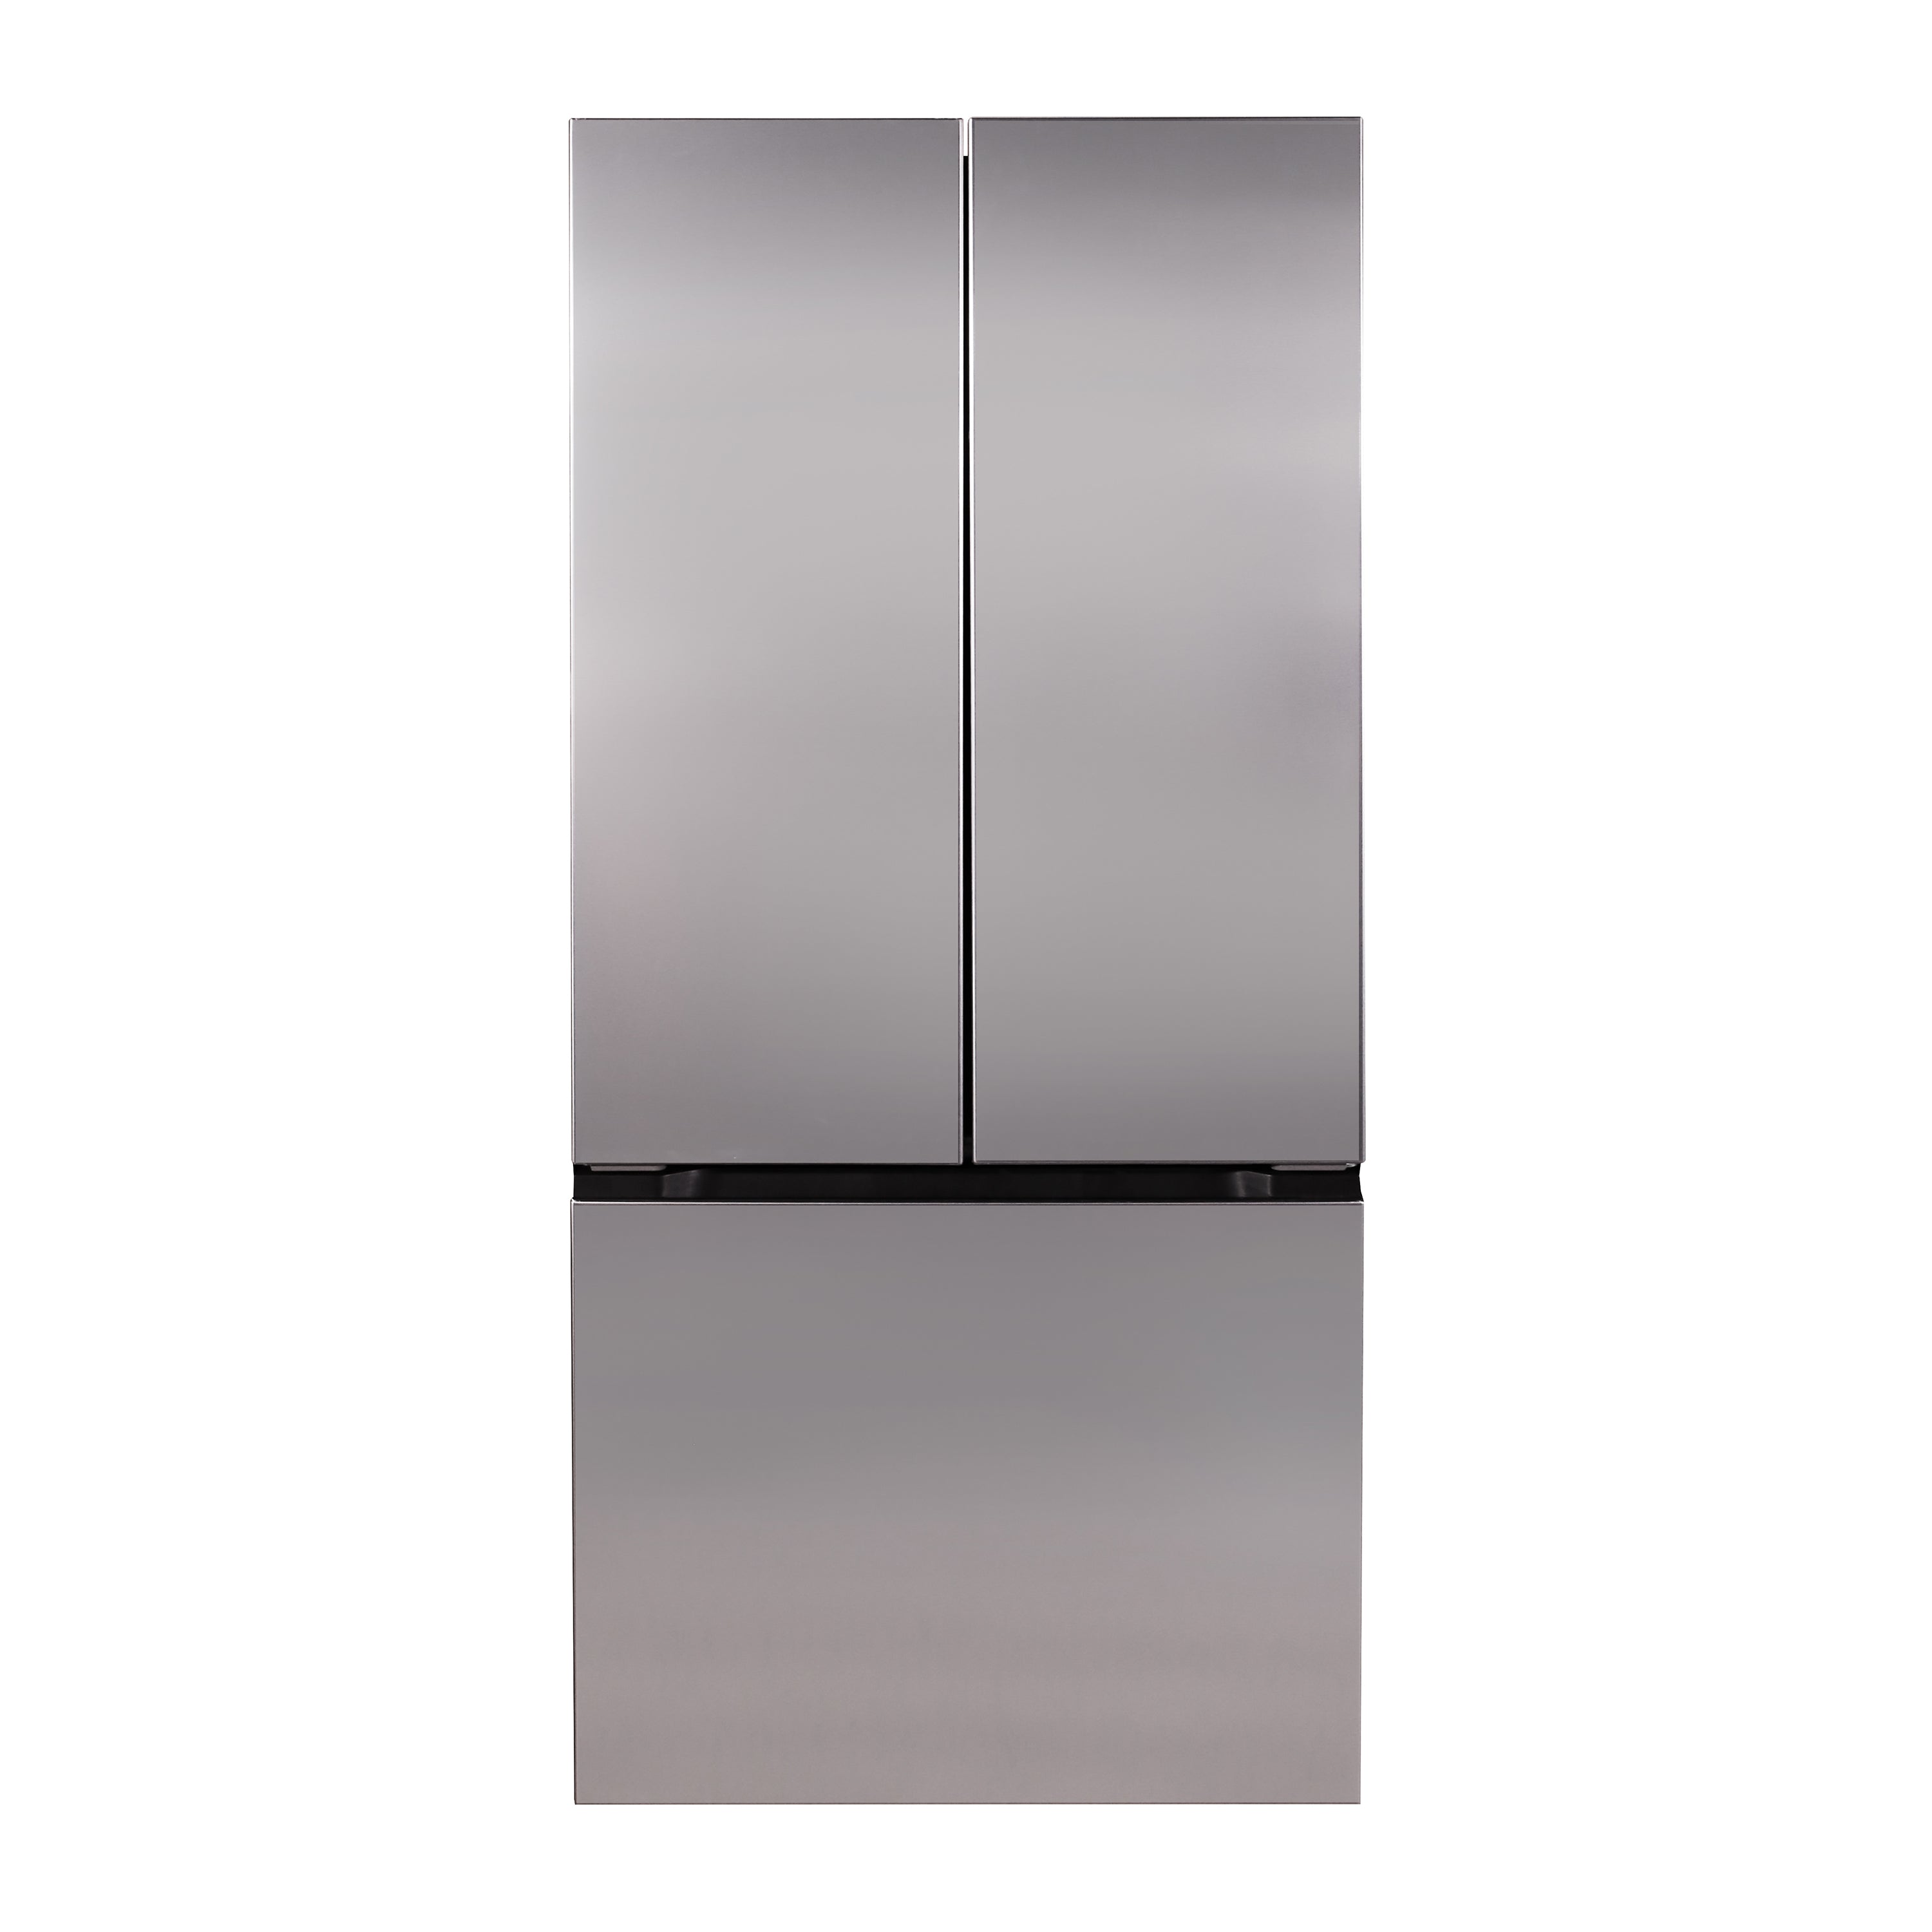 Avanti - FFFDS175L3S, Avanti Frost Free French Door Refrigerator, 17.5 cu. ft., in Stainless Steel